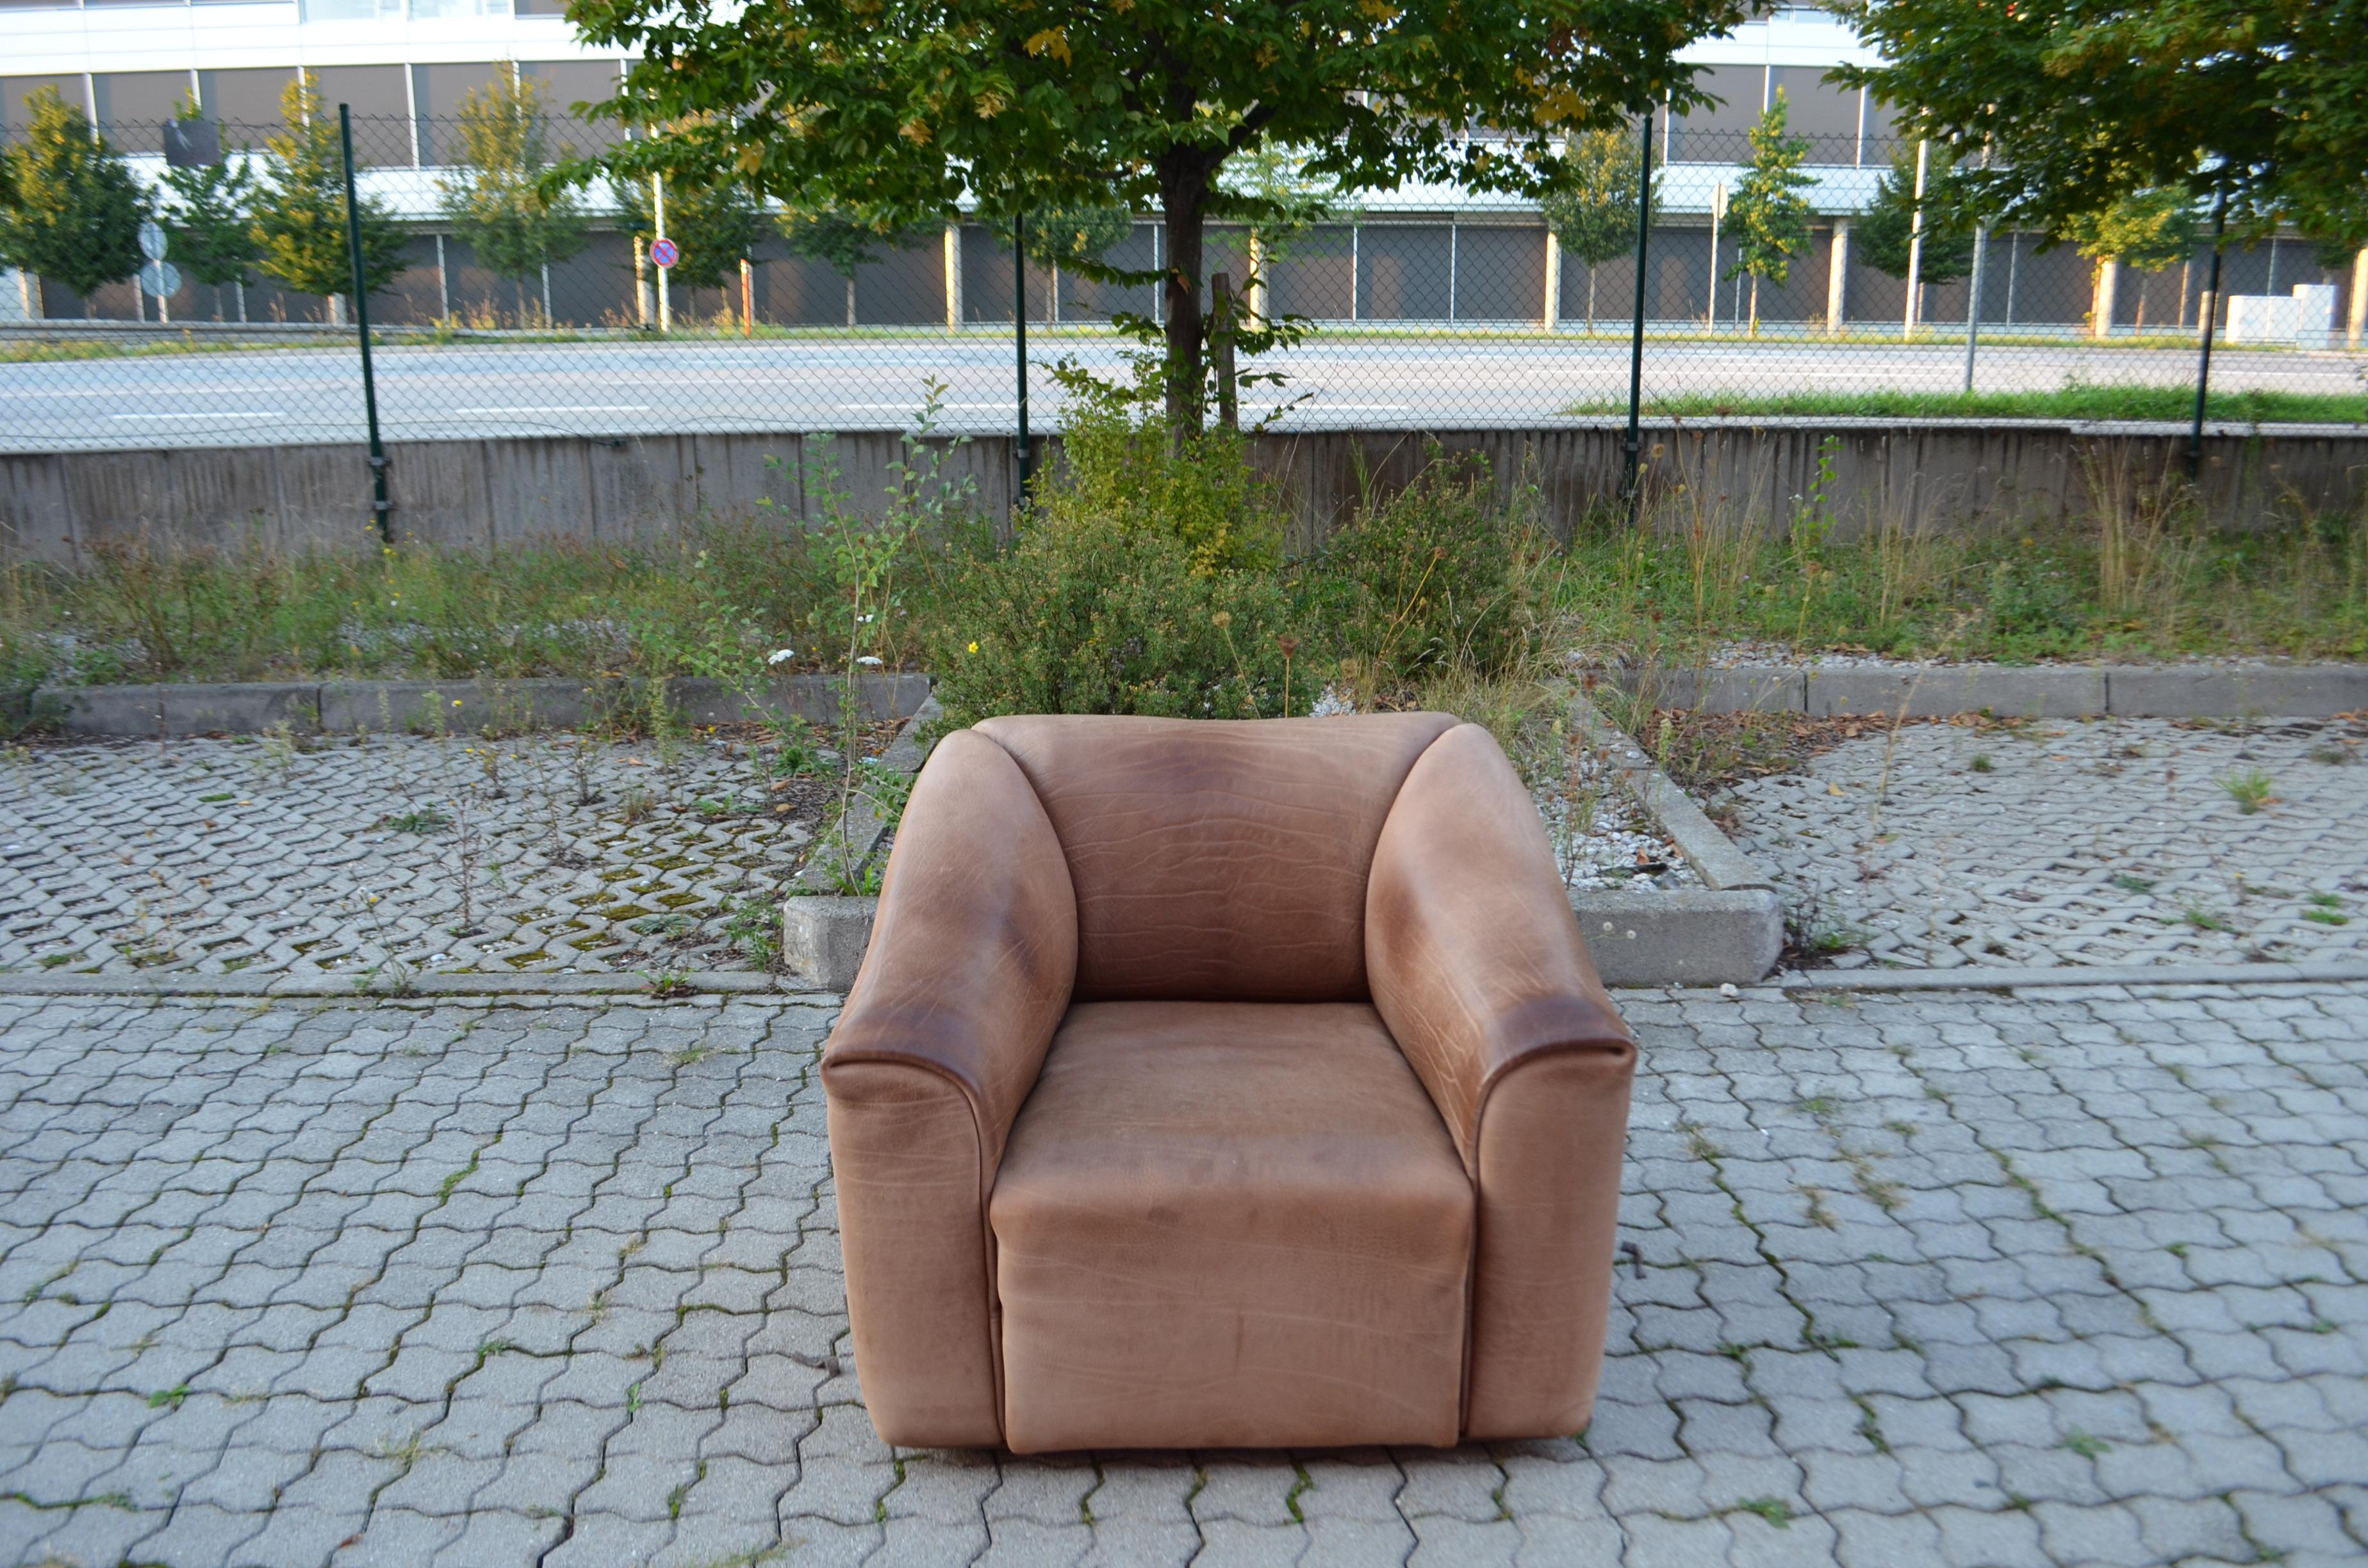 De Sede DS 47 / 01 Nackenleder Sessel.
Dieser DS-47 wurde in der Schweiz von De Sede hergestellt und ist mit 3-5 mm dickem Naturleder gepolstert.
Die Lederfarbe ist braun
Der Sitz ist für mehr Sitzkomfort um 15 cm ausziehbar.
Vintage-Zustand mit